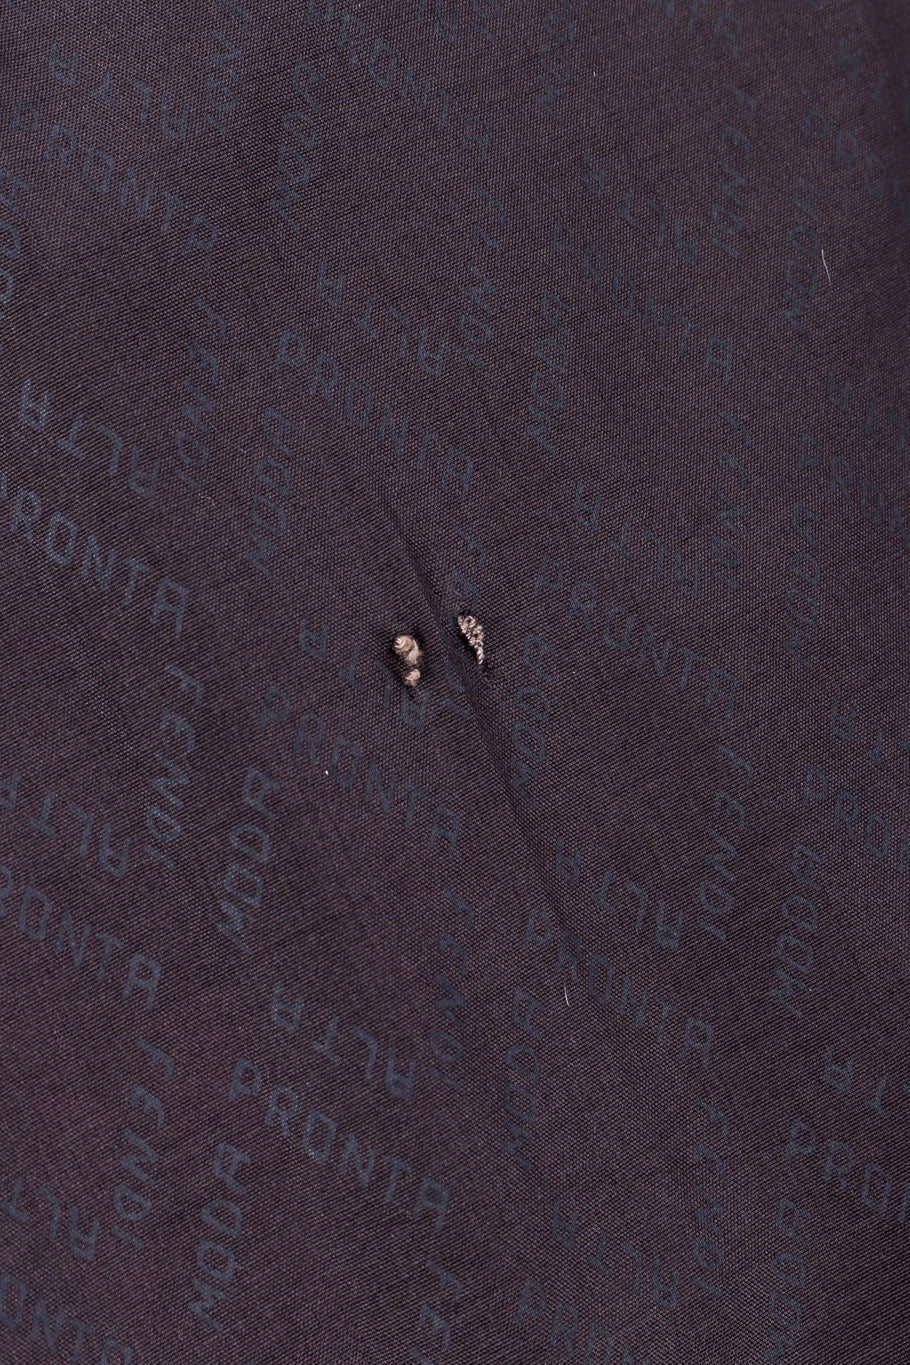 Vintage Fendi Lamb Fur Coat tiny holes closeup @recessla